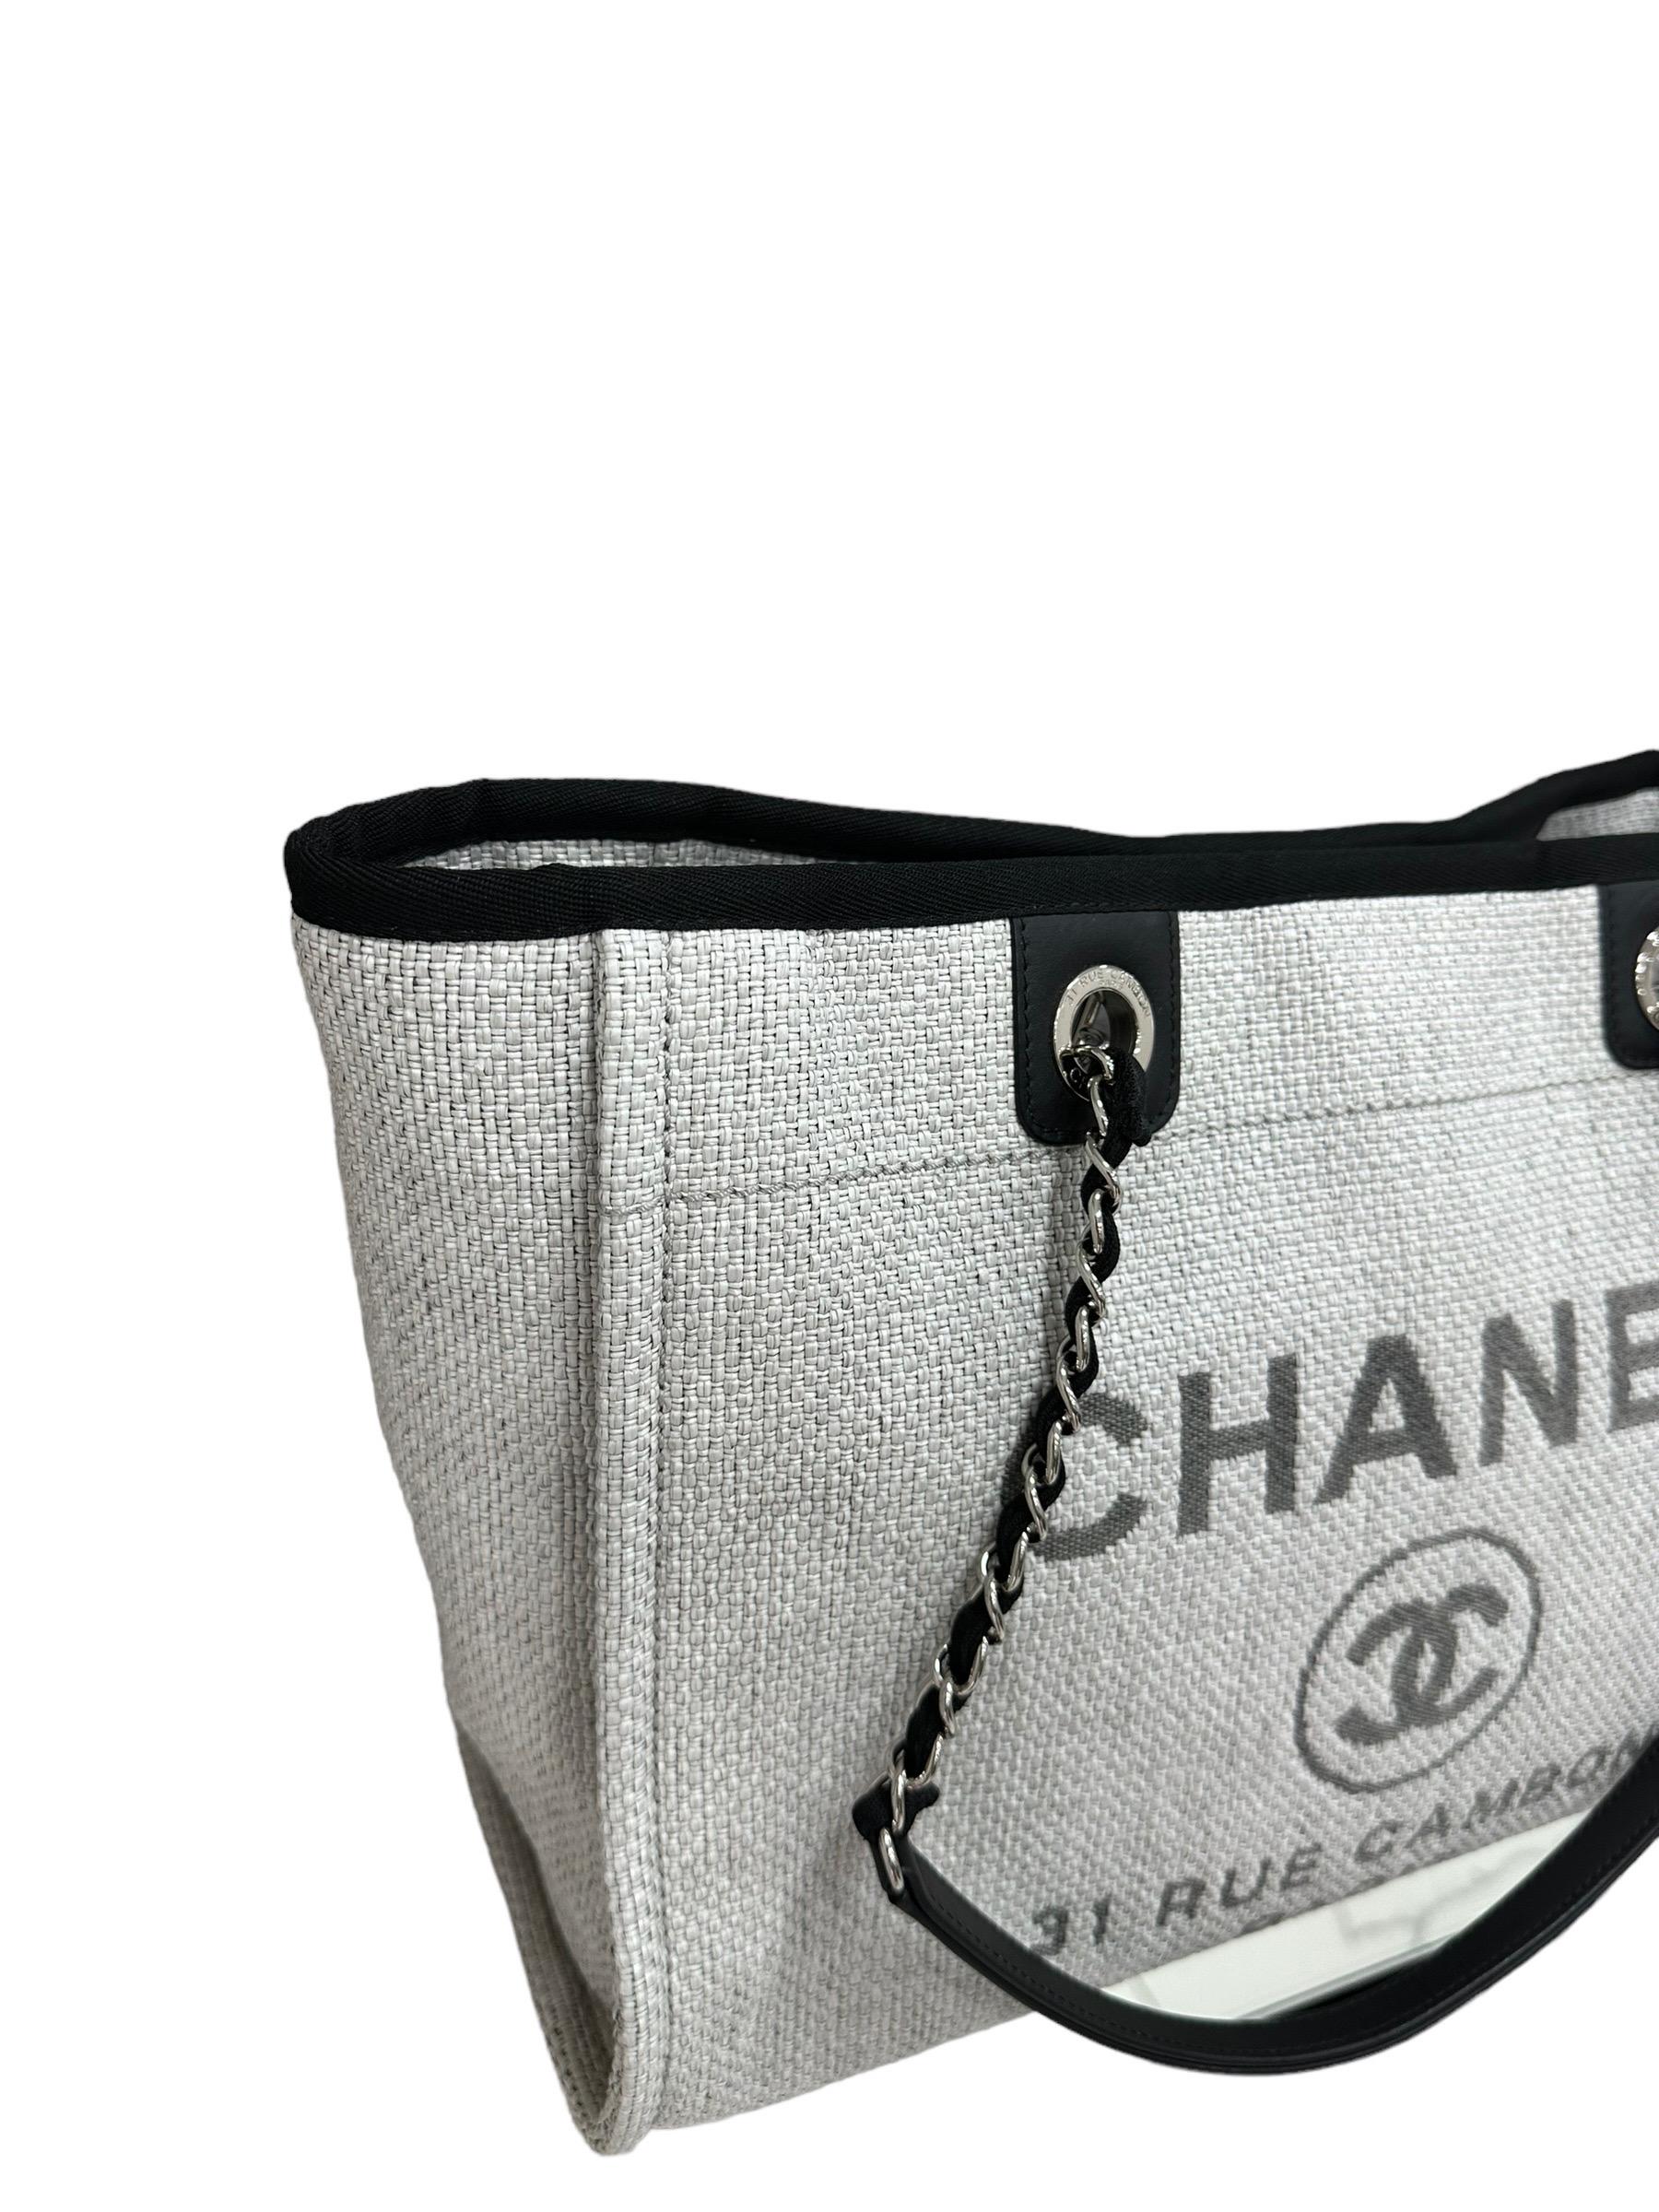 Borsa firmata Chanel, modello Deauville, realizzata in rafia grigio chiaro con inserti in tela nera e hardware argentati. Dotata di una chiusura centrale calamitata, internamente rivestita in tela nera, molto capiente. Munita di doppio manico a